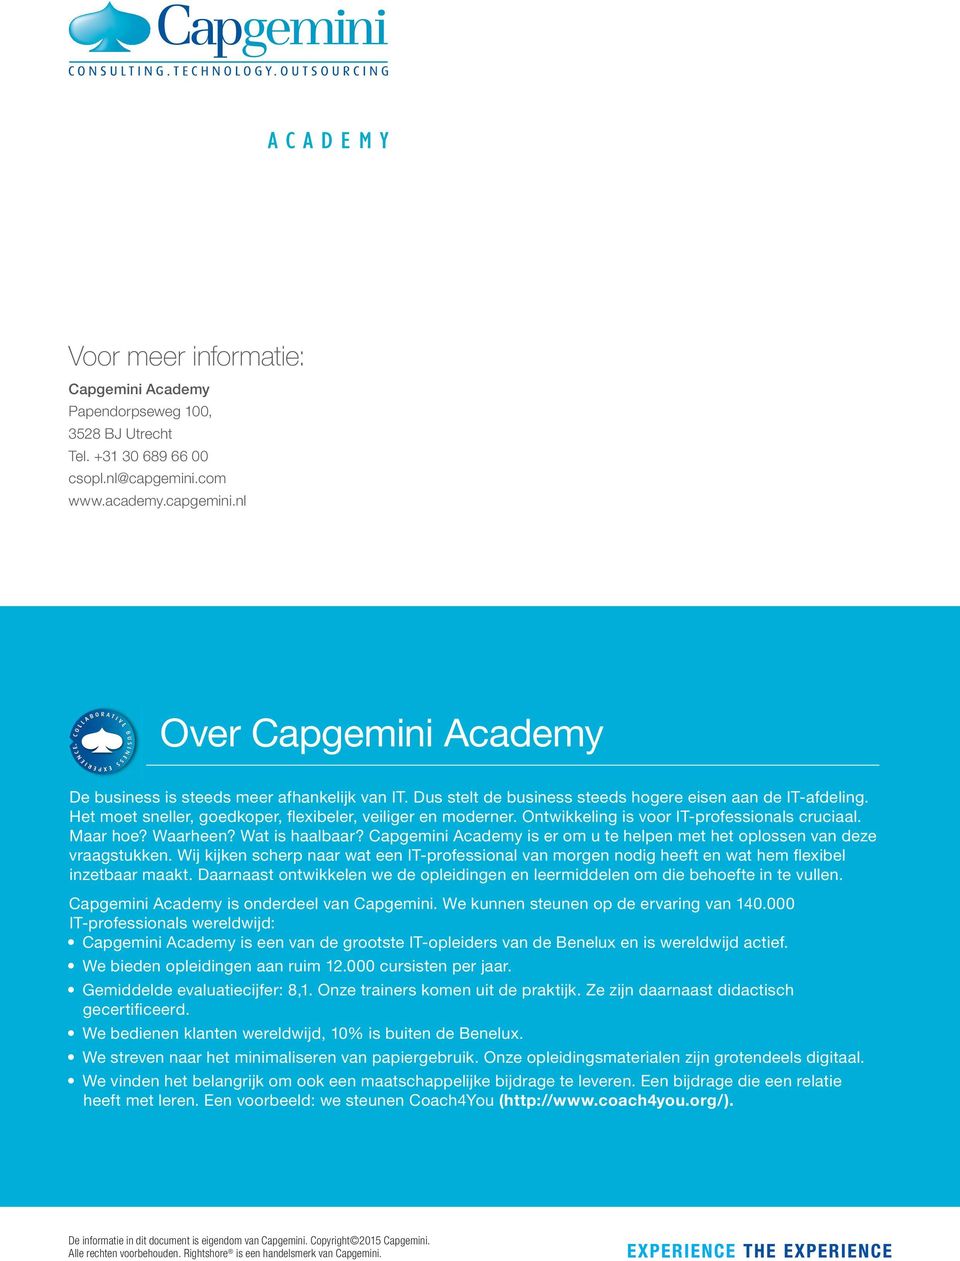 Wat is haalbaar? Capgemini Academy is er om u te helpen met het oplossen van deze vraagstukken.